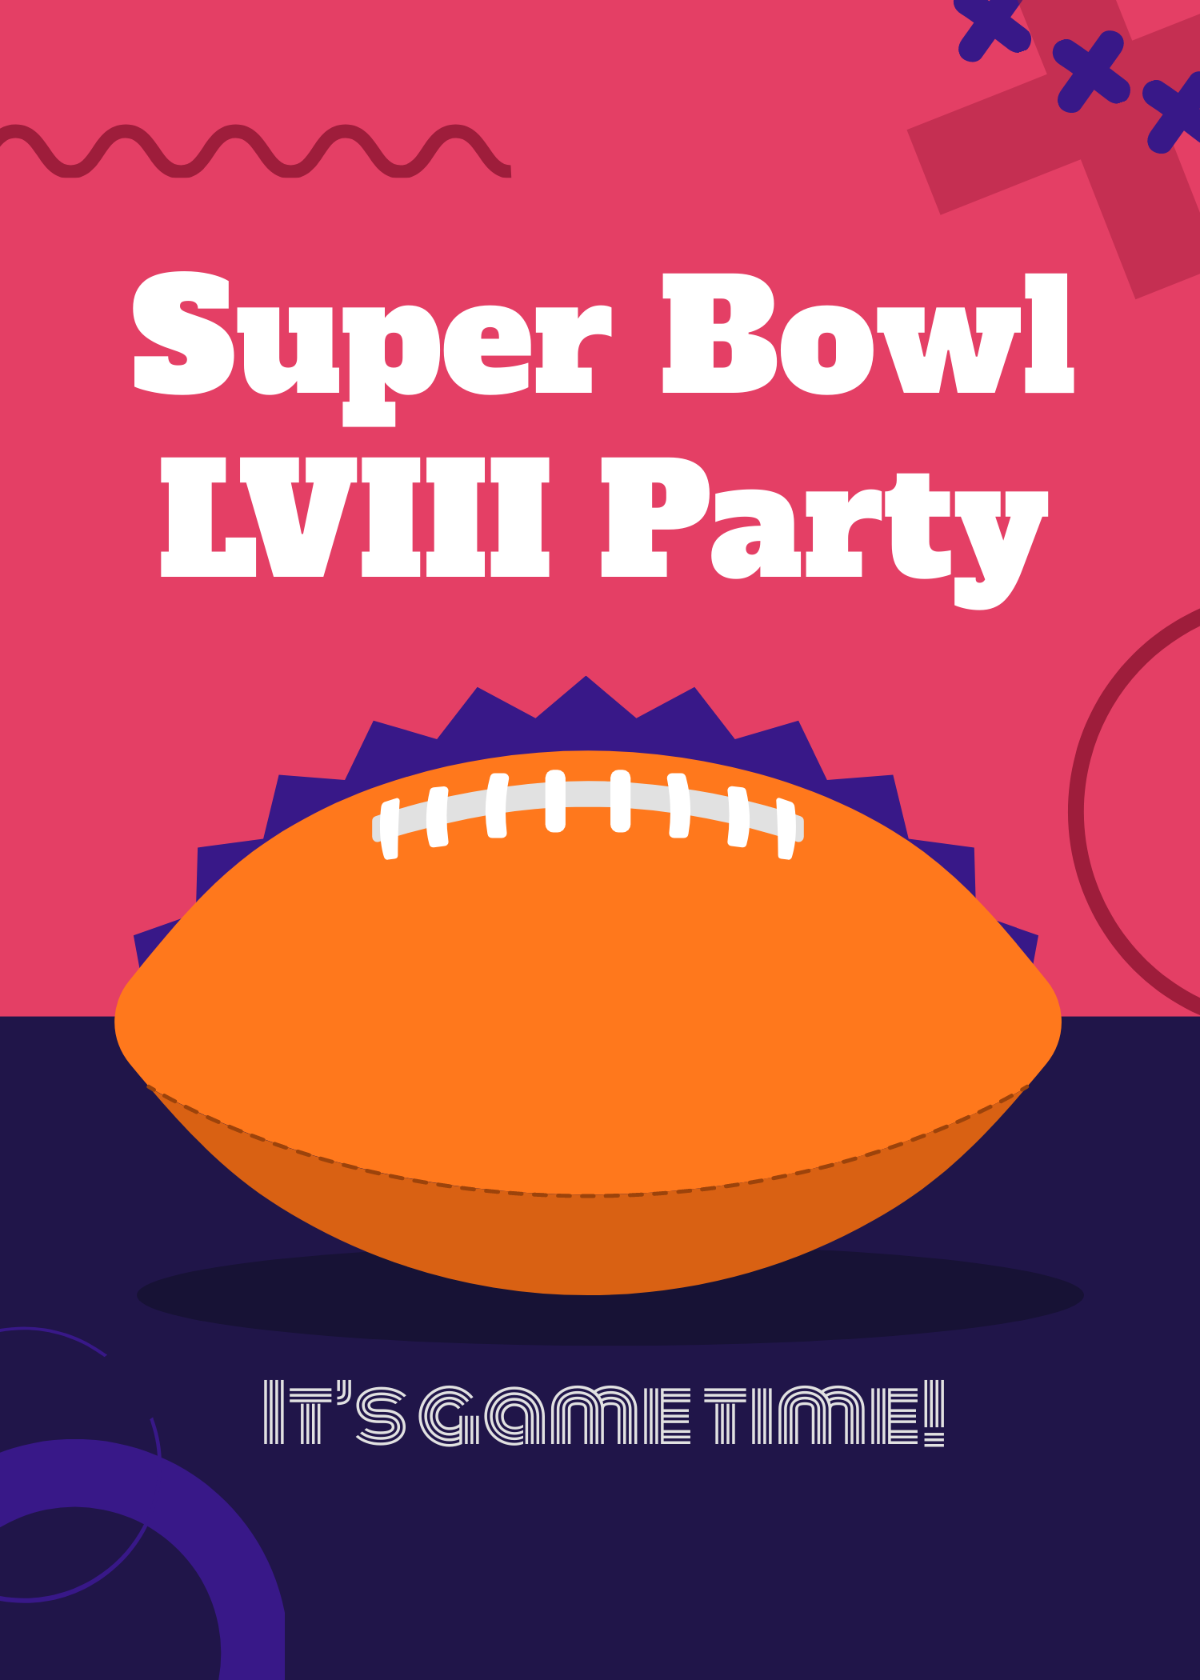 Super Bowl Party Invite Template